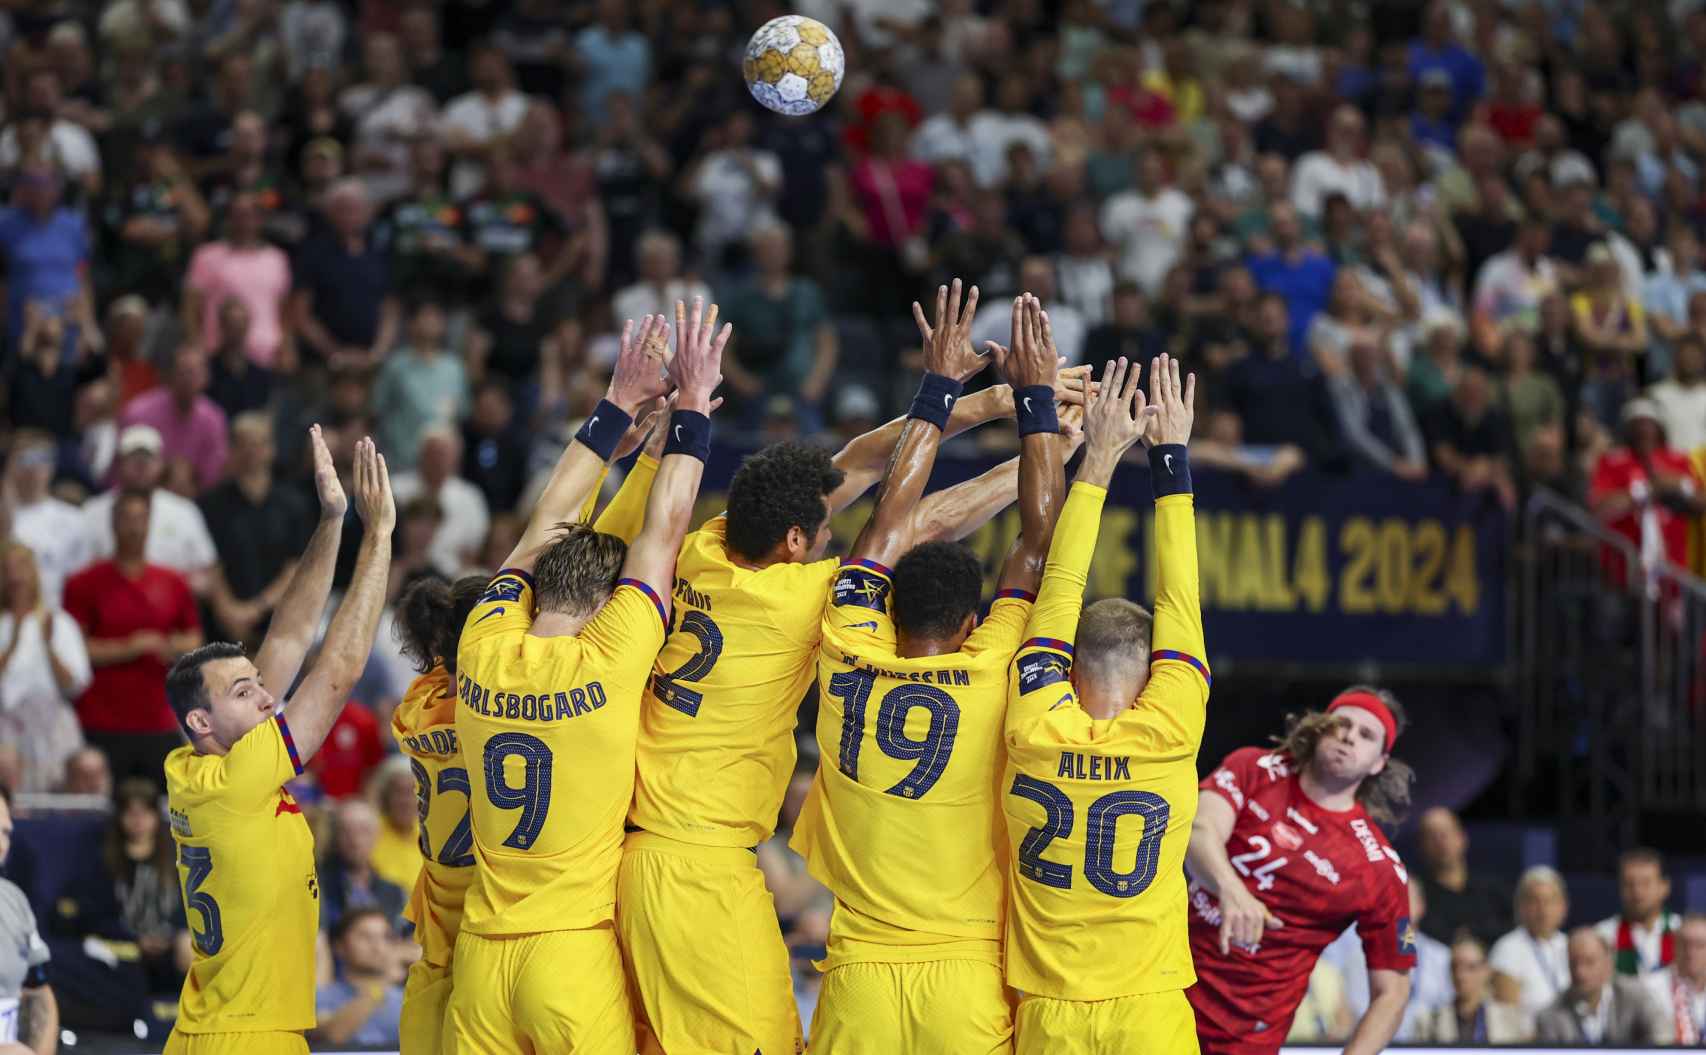 Mikkel Hansen lanza una falta en la final de Champions contra el Barça de balonmano